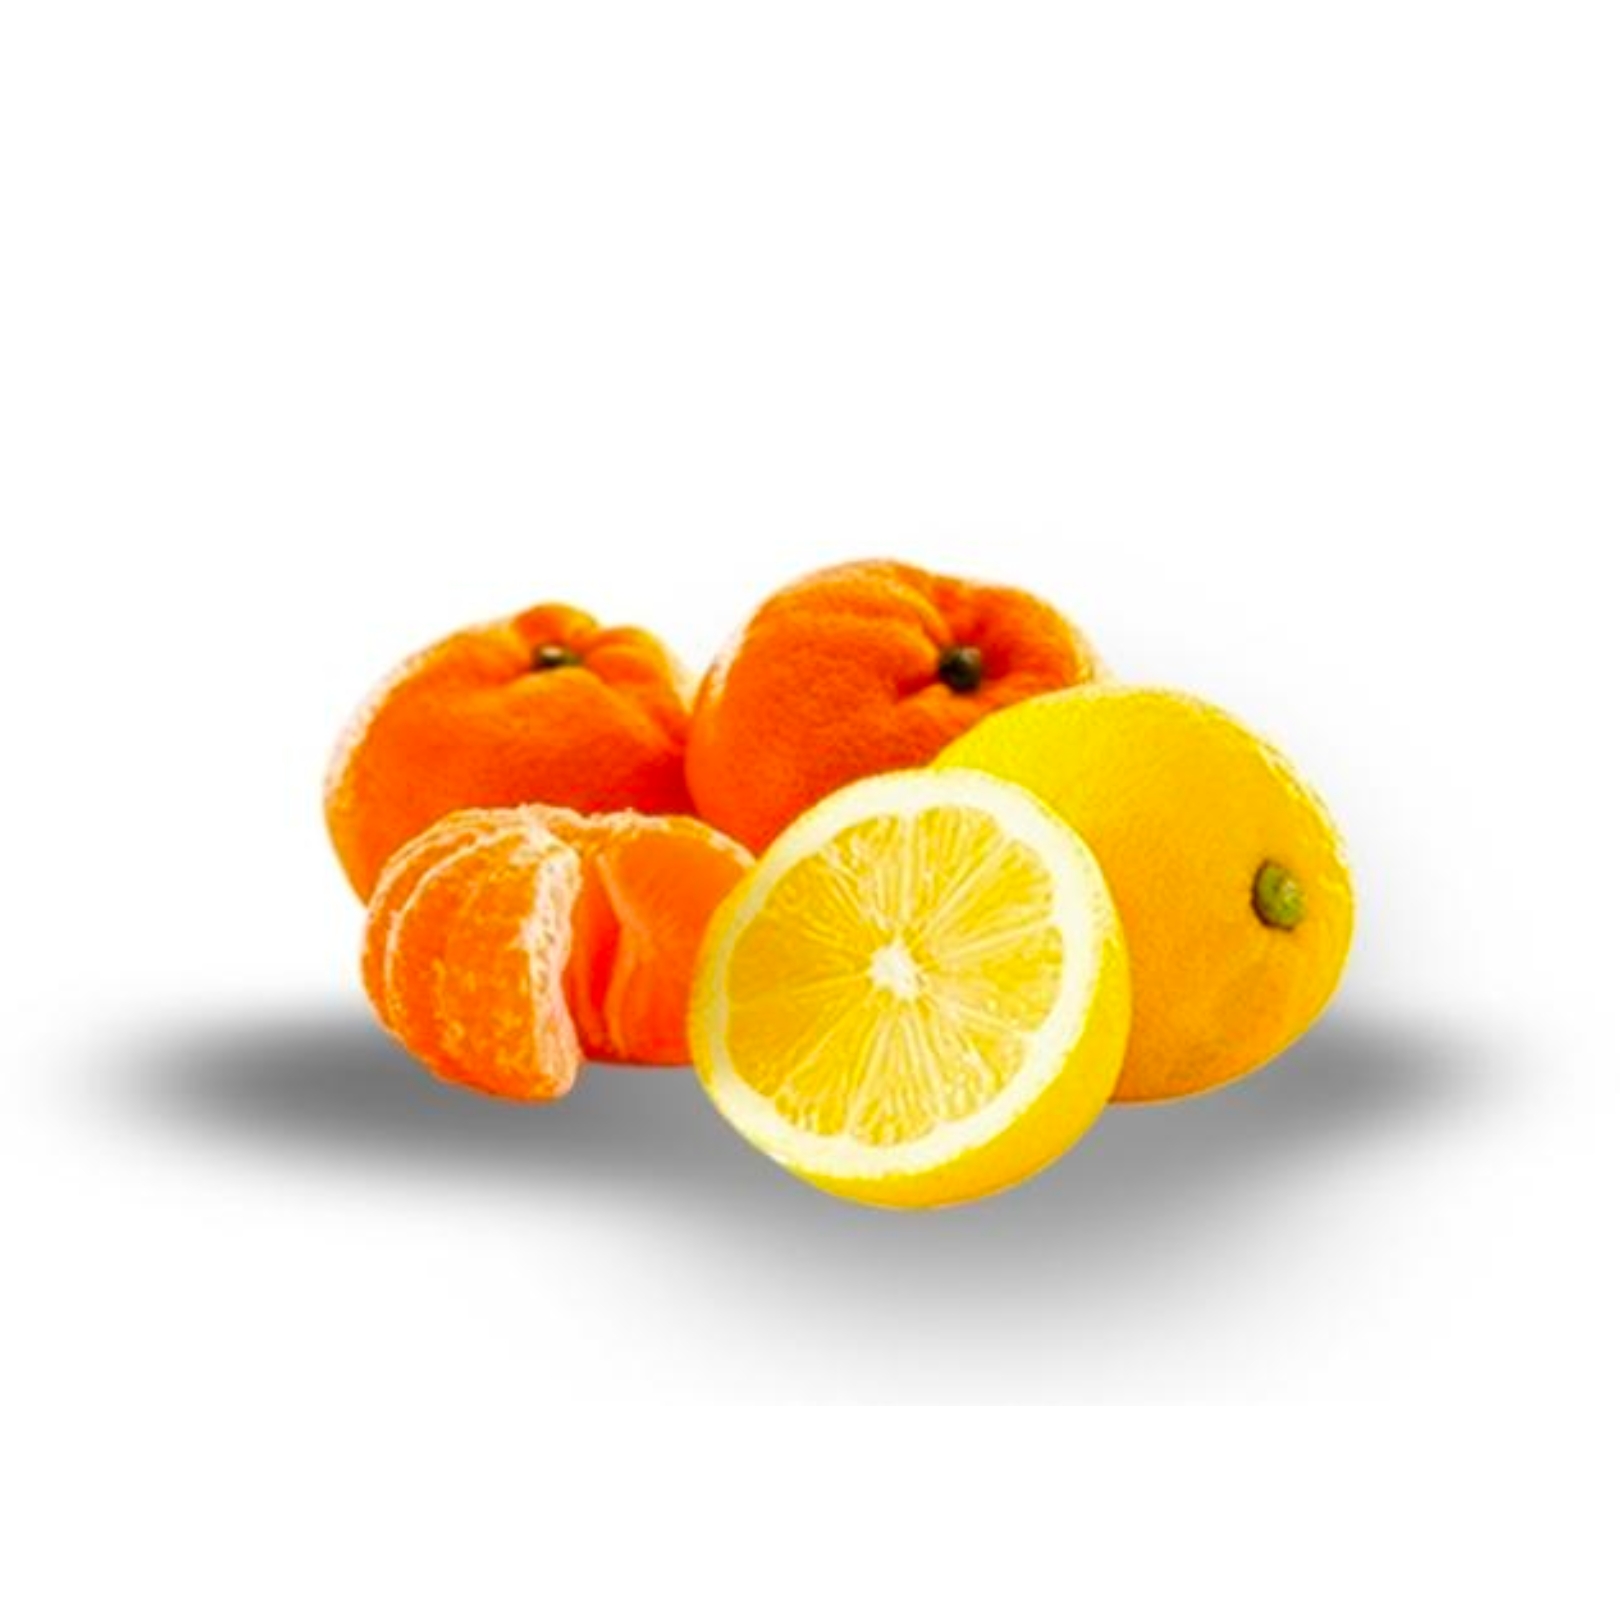 Buy Mandarin Lemon Online NZ